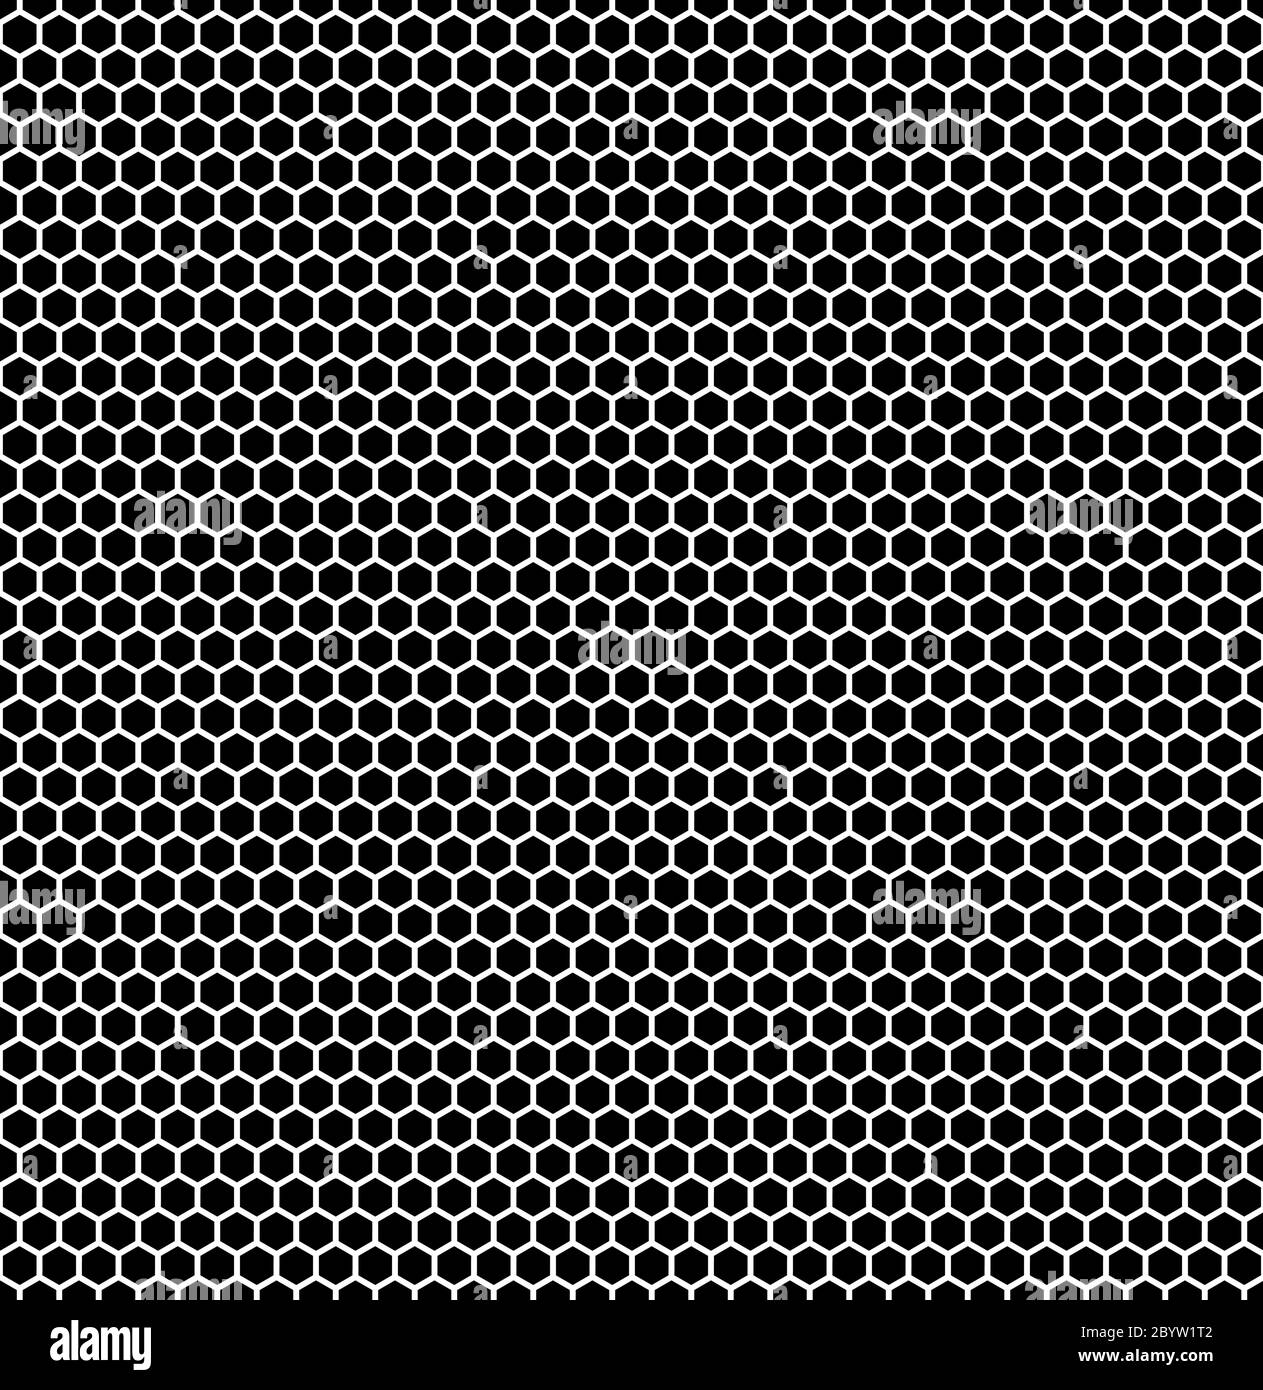 Fond hexagonal sans couture en noir avec bordures blanches. Illustration vectorielle. Illustration de Vecteur